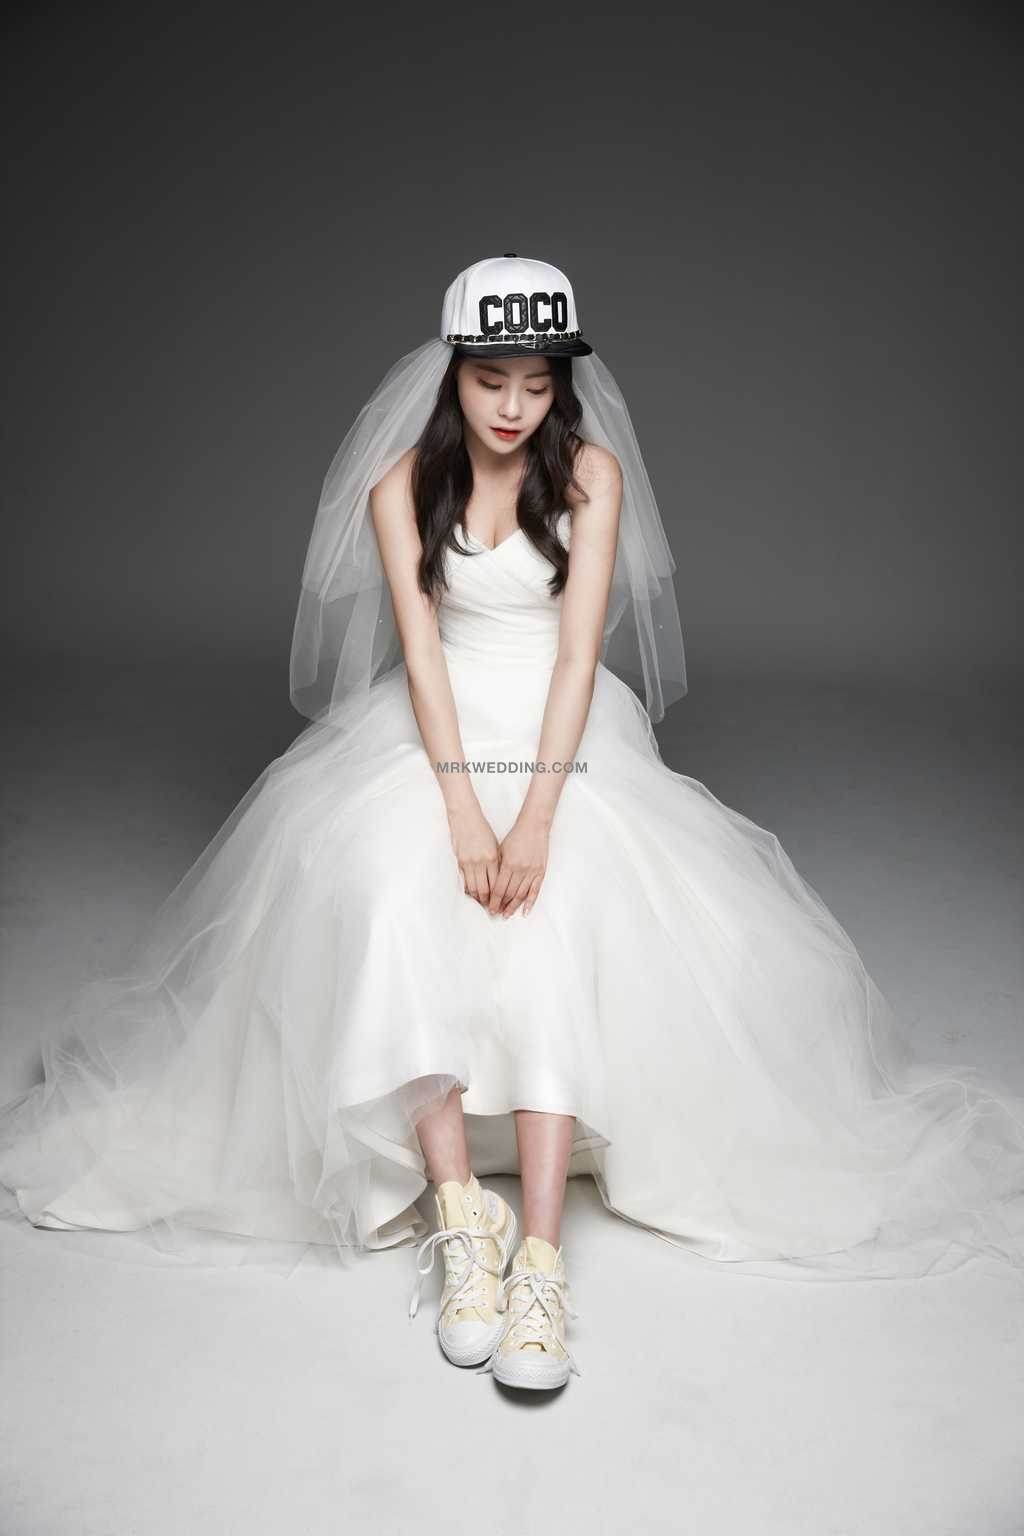 korea pre wedding (16).jpg